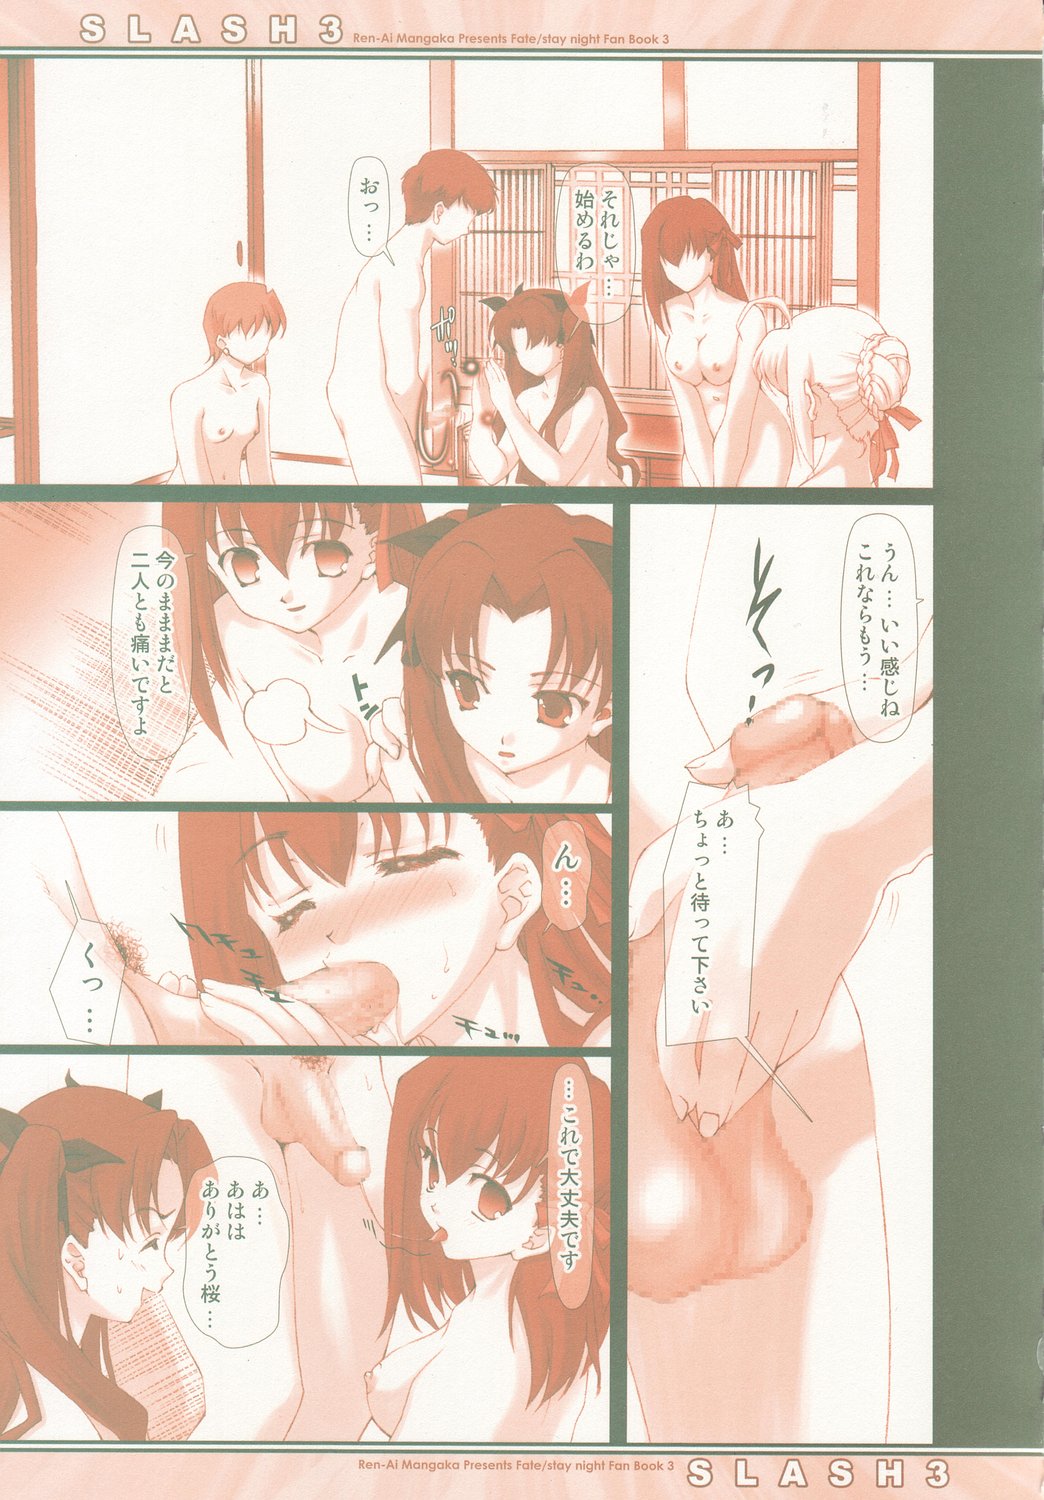 (C66) [Renai Mangaka (Naruse Hirofumi)] SLASH 3 (Fate/stay night) page 16 full